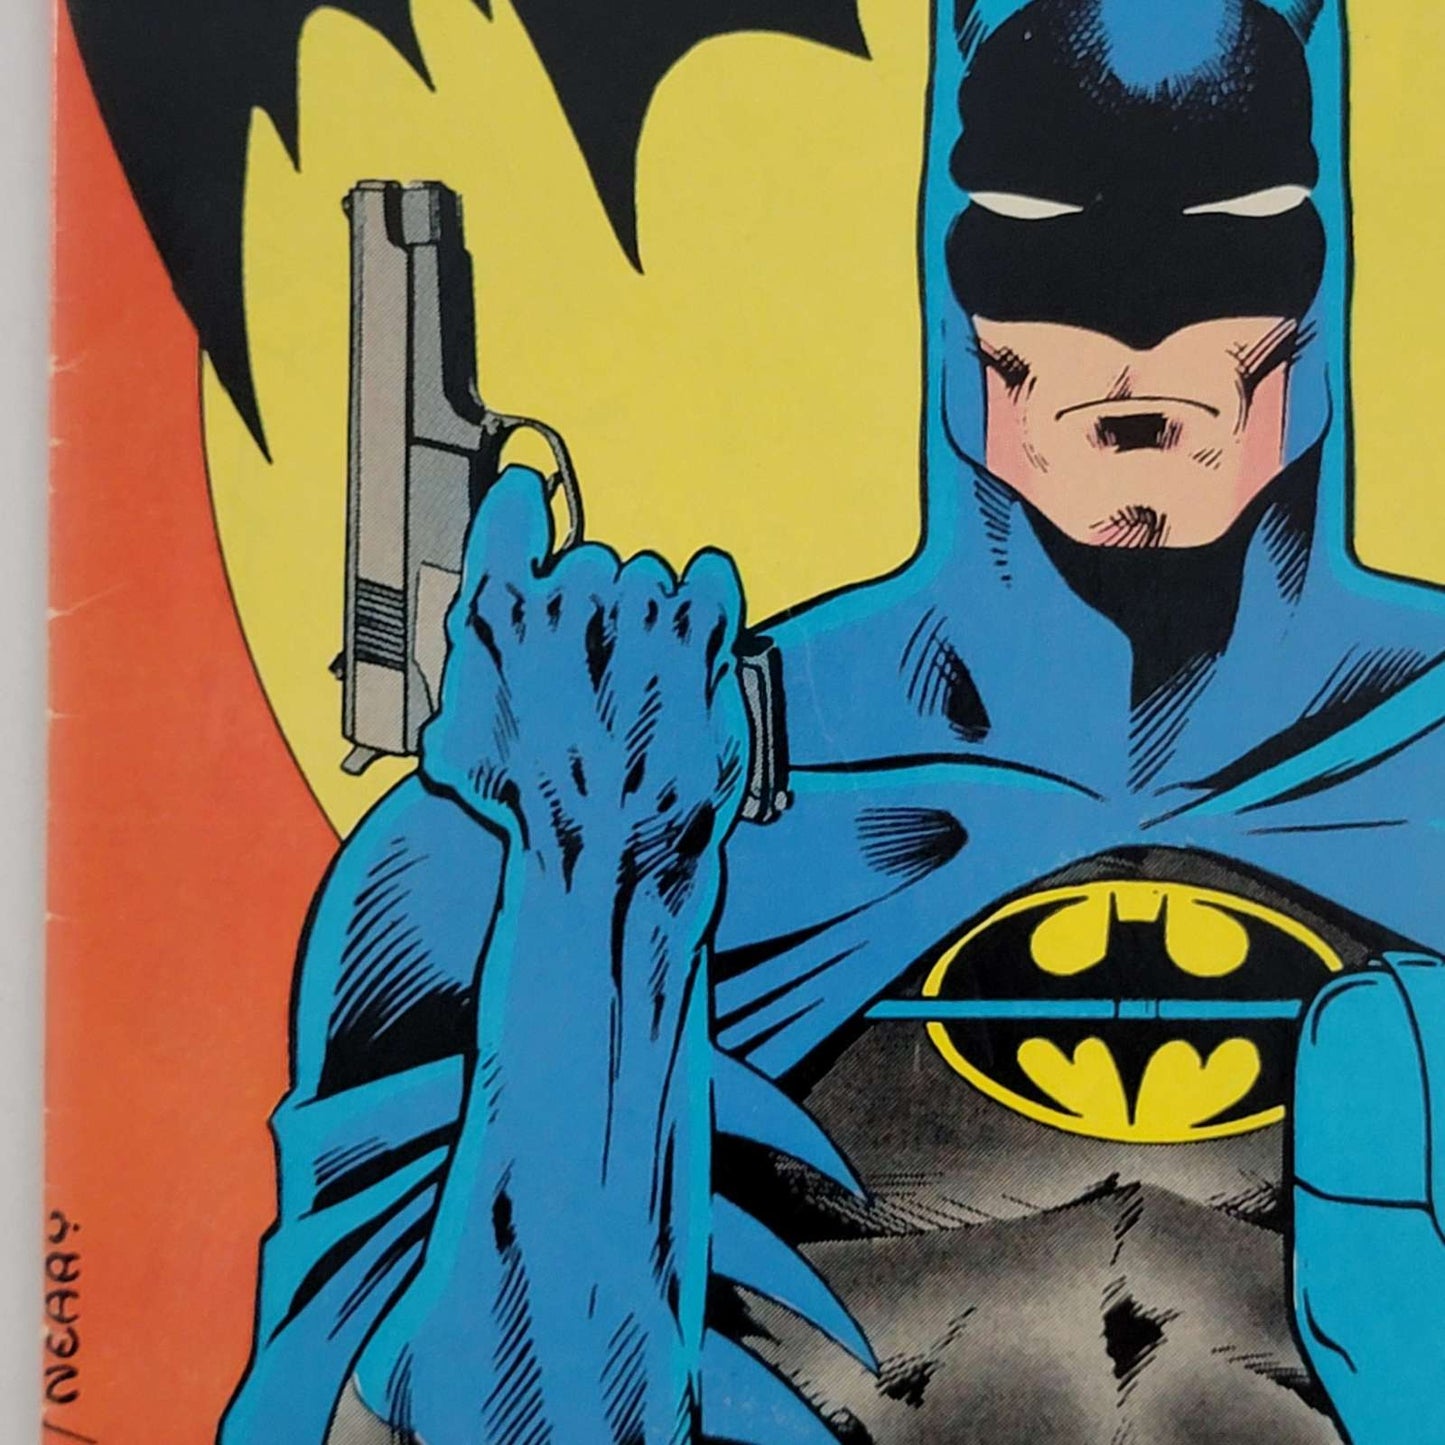 Detective Comics Vol 1 #0575